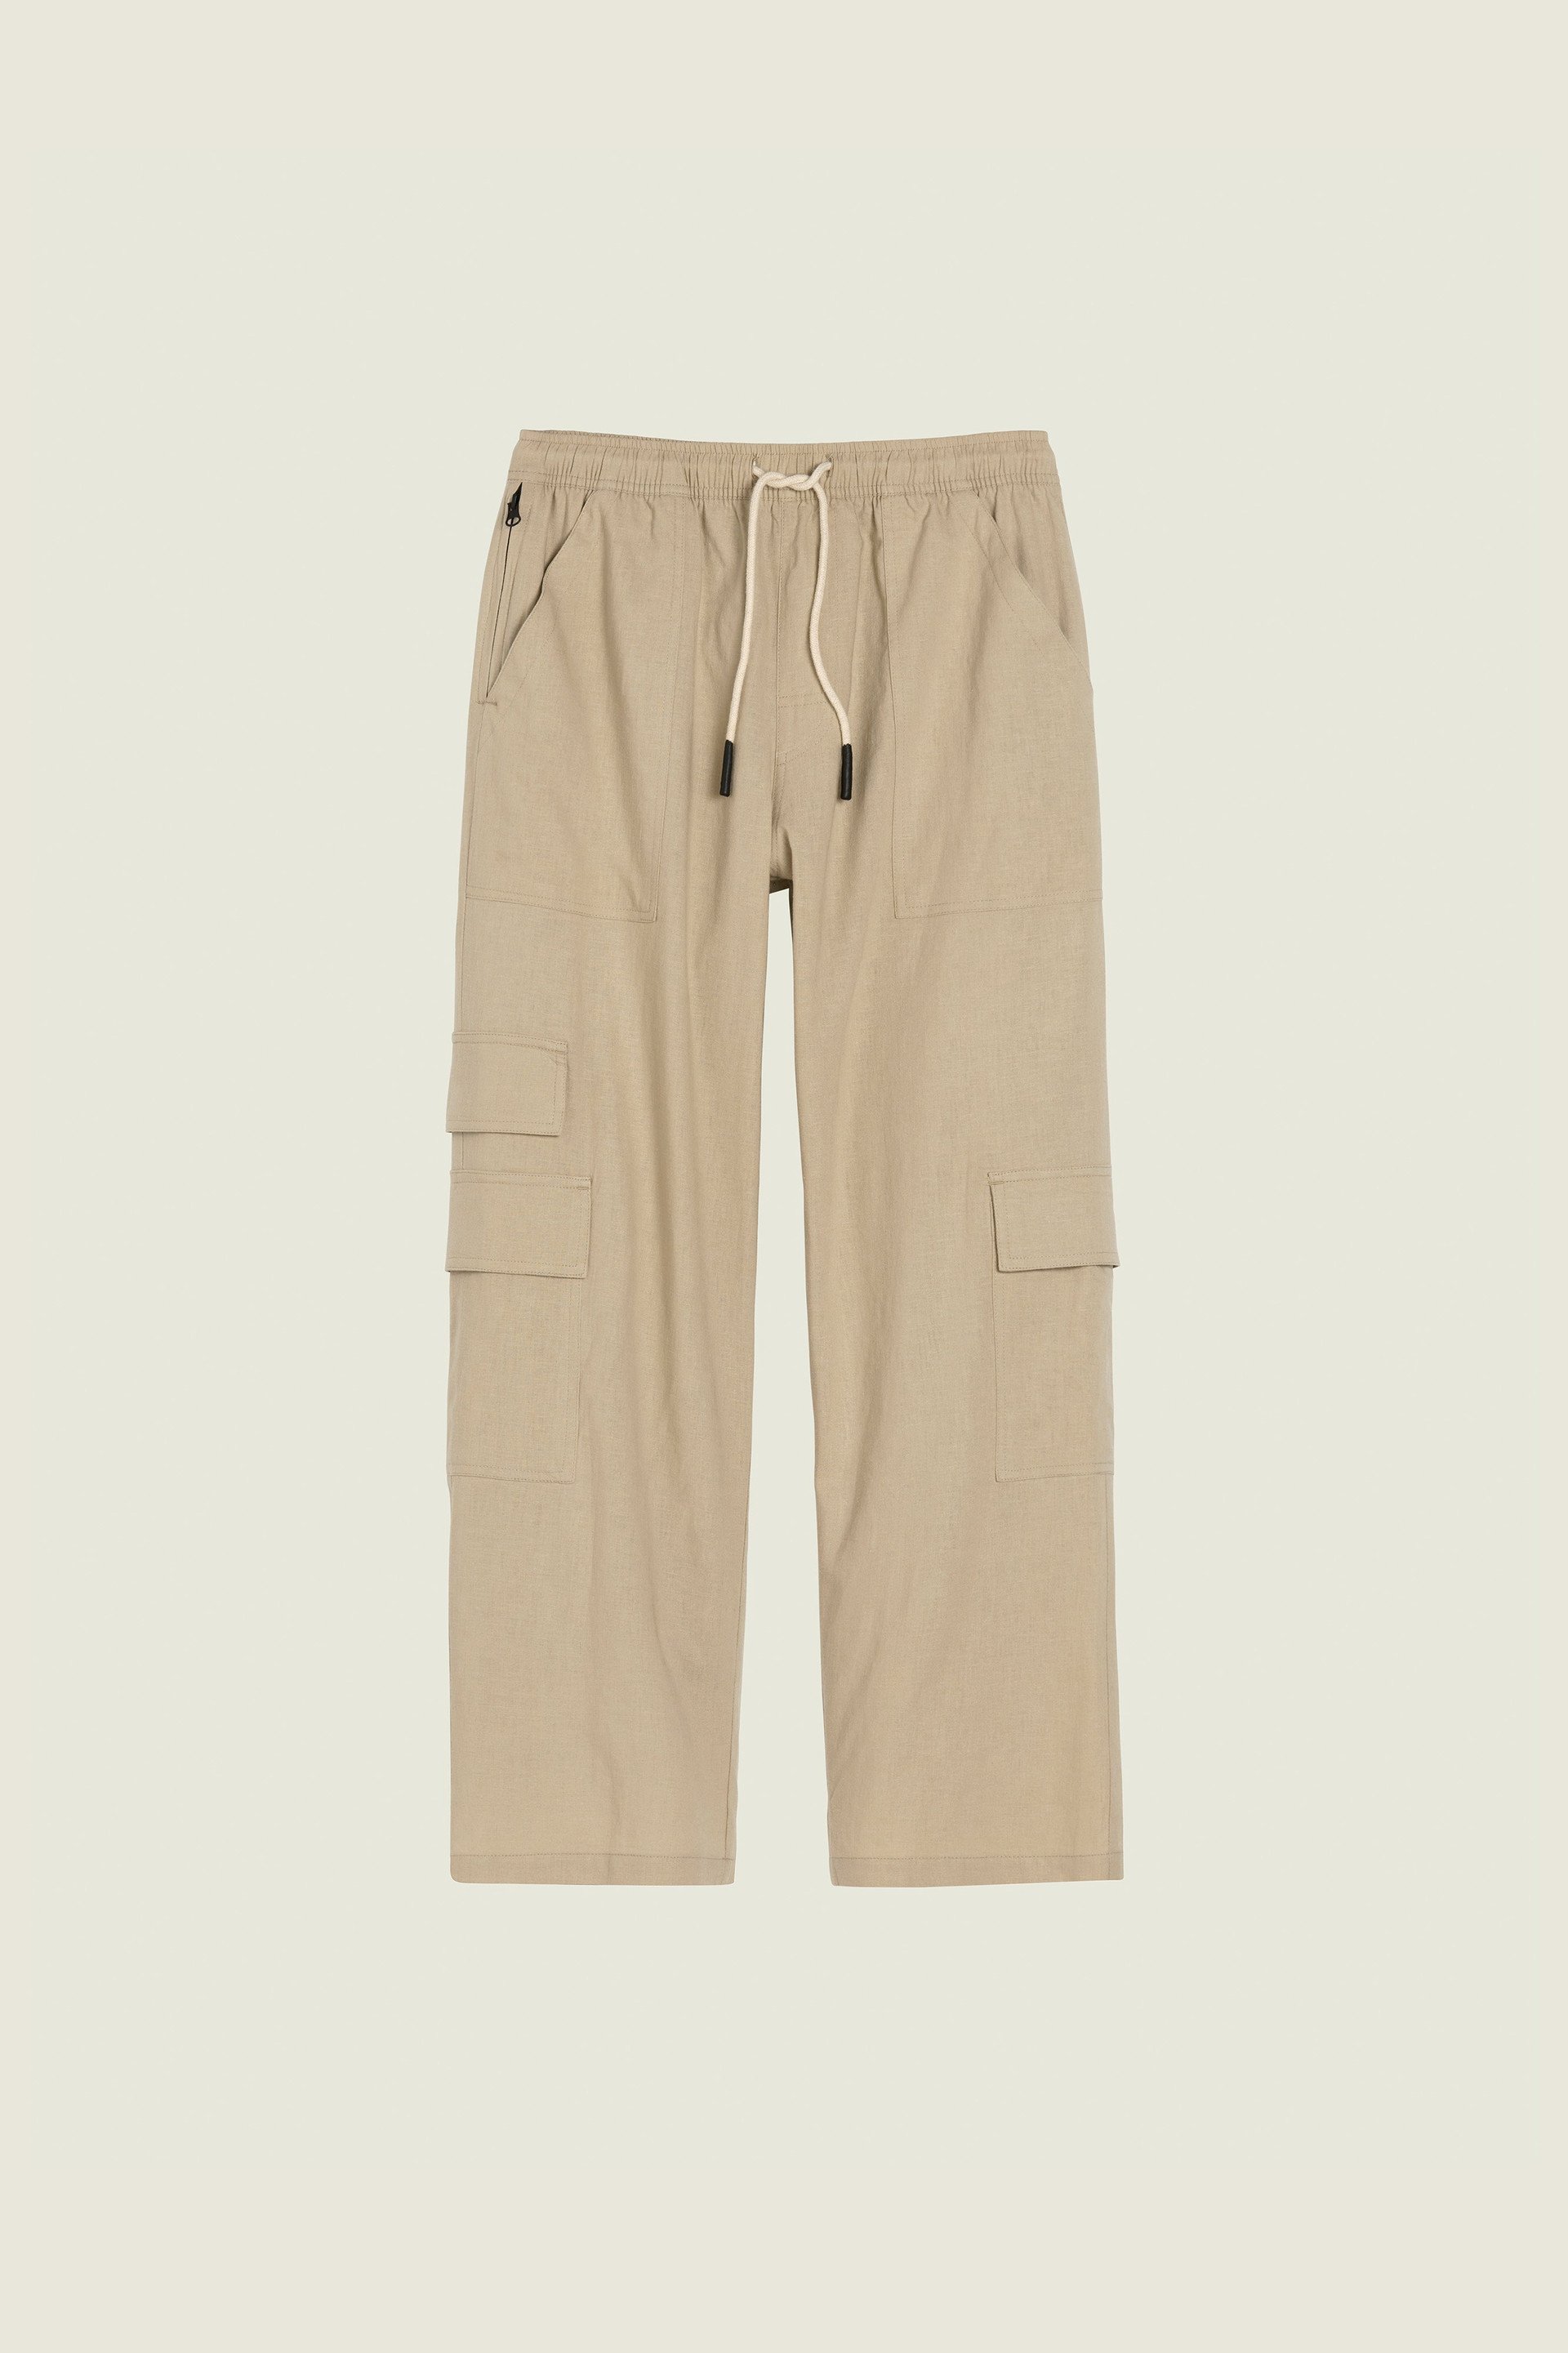 Beige Cargo Pants - Linen Jogger Pants - Paperbag Waist Pants - Lulus